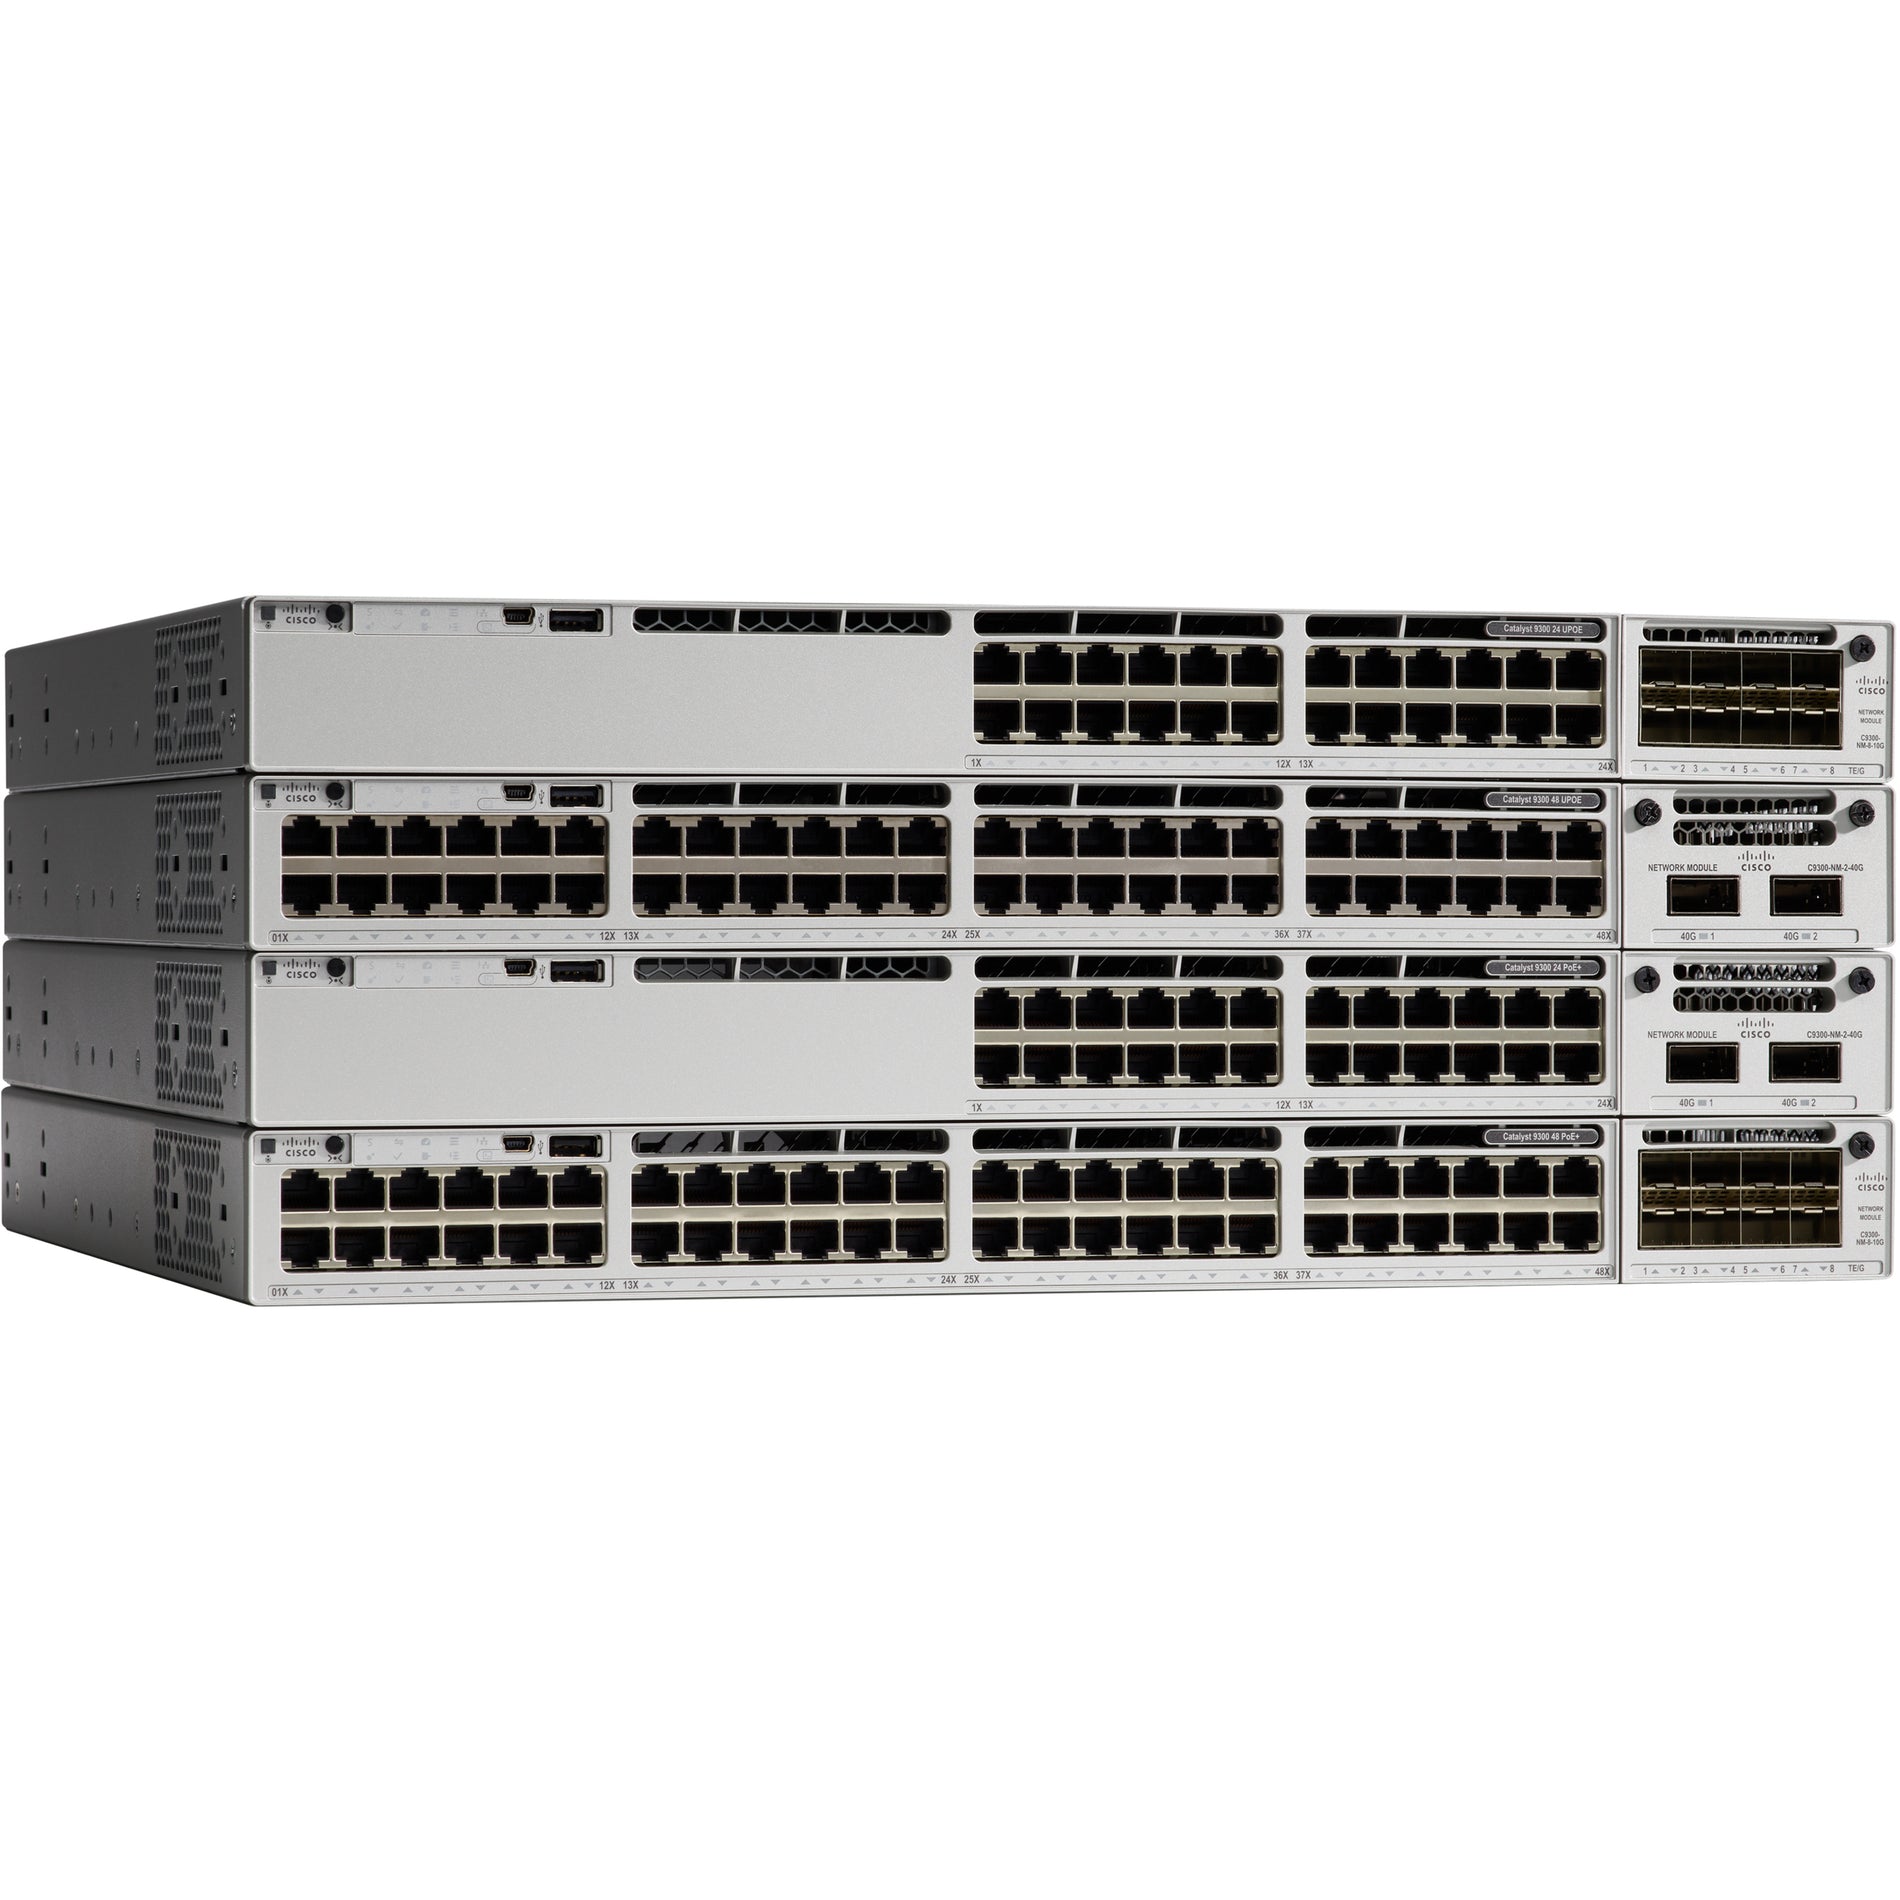 Cisco C9300-24UX-E Catalyst C9300-24UX Ethernet Switch 24 x Gigabit Ethernet Network Manageable Cisco C9300-24UX-E Catalyst C9300-24UX Ethernet Switch 24 x Gigabit Ethernet Network Manageable